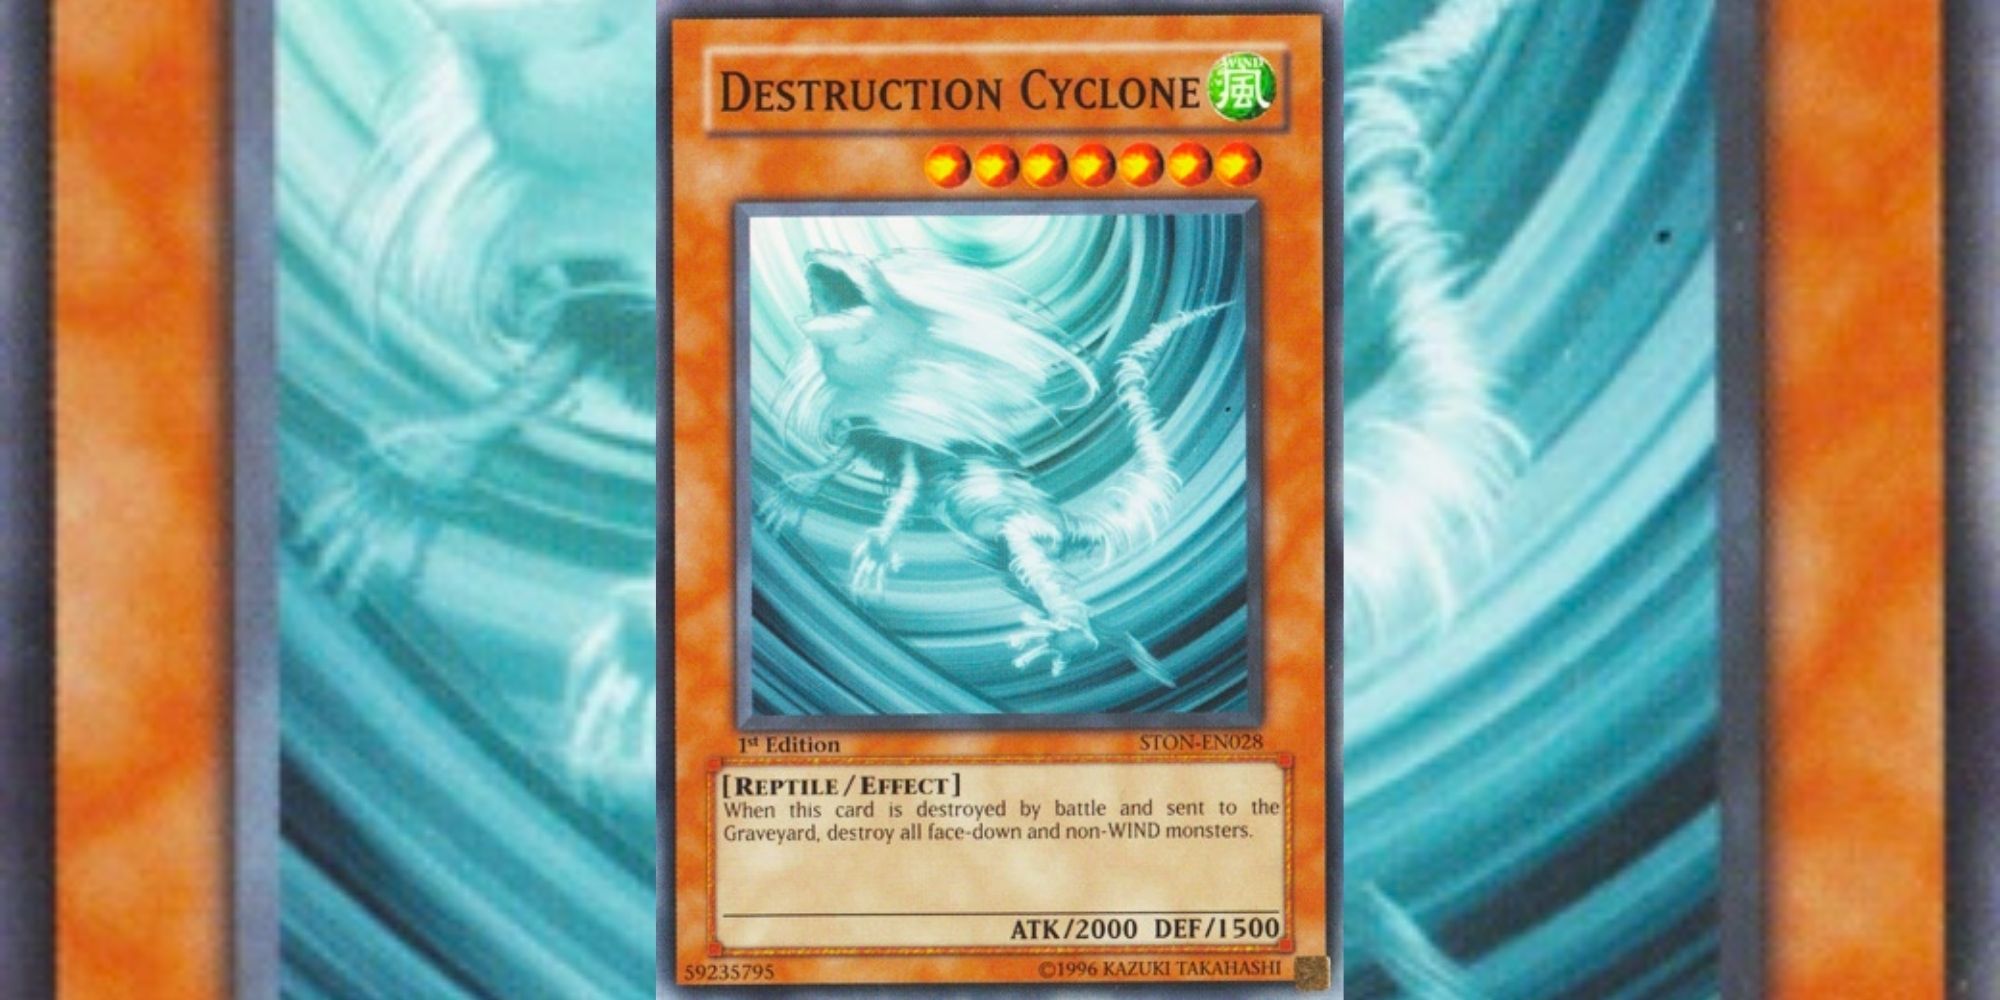 Destruction Cyclone card in Yu-Gi-Oh!